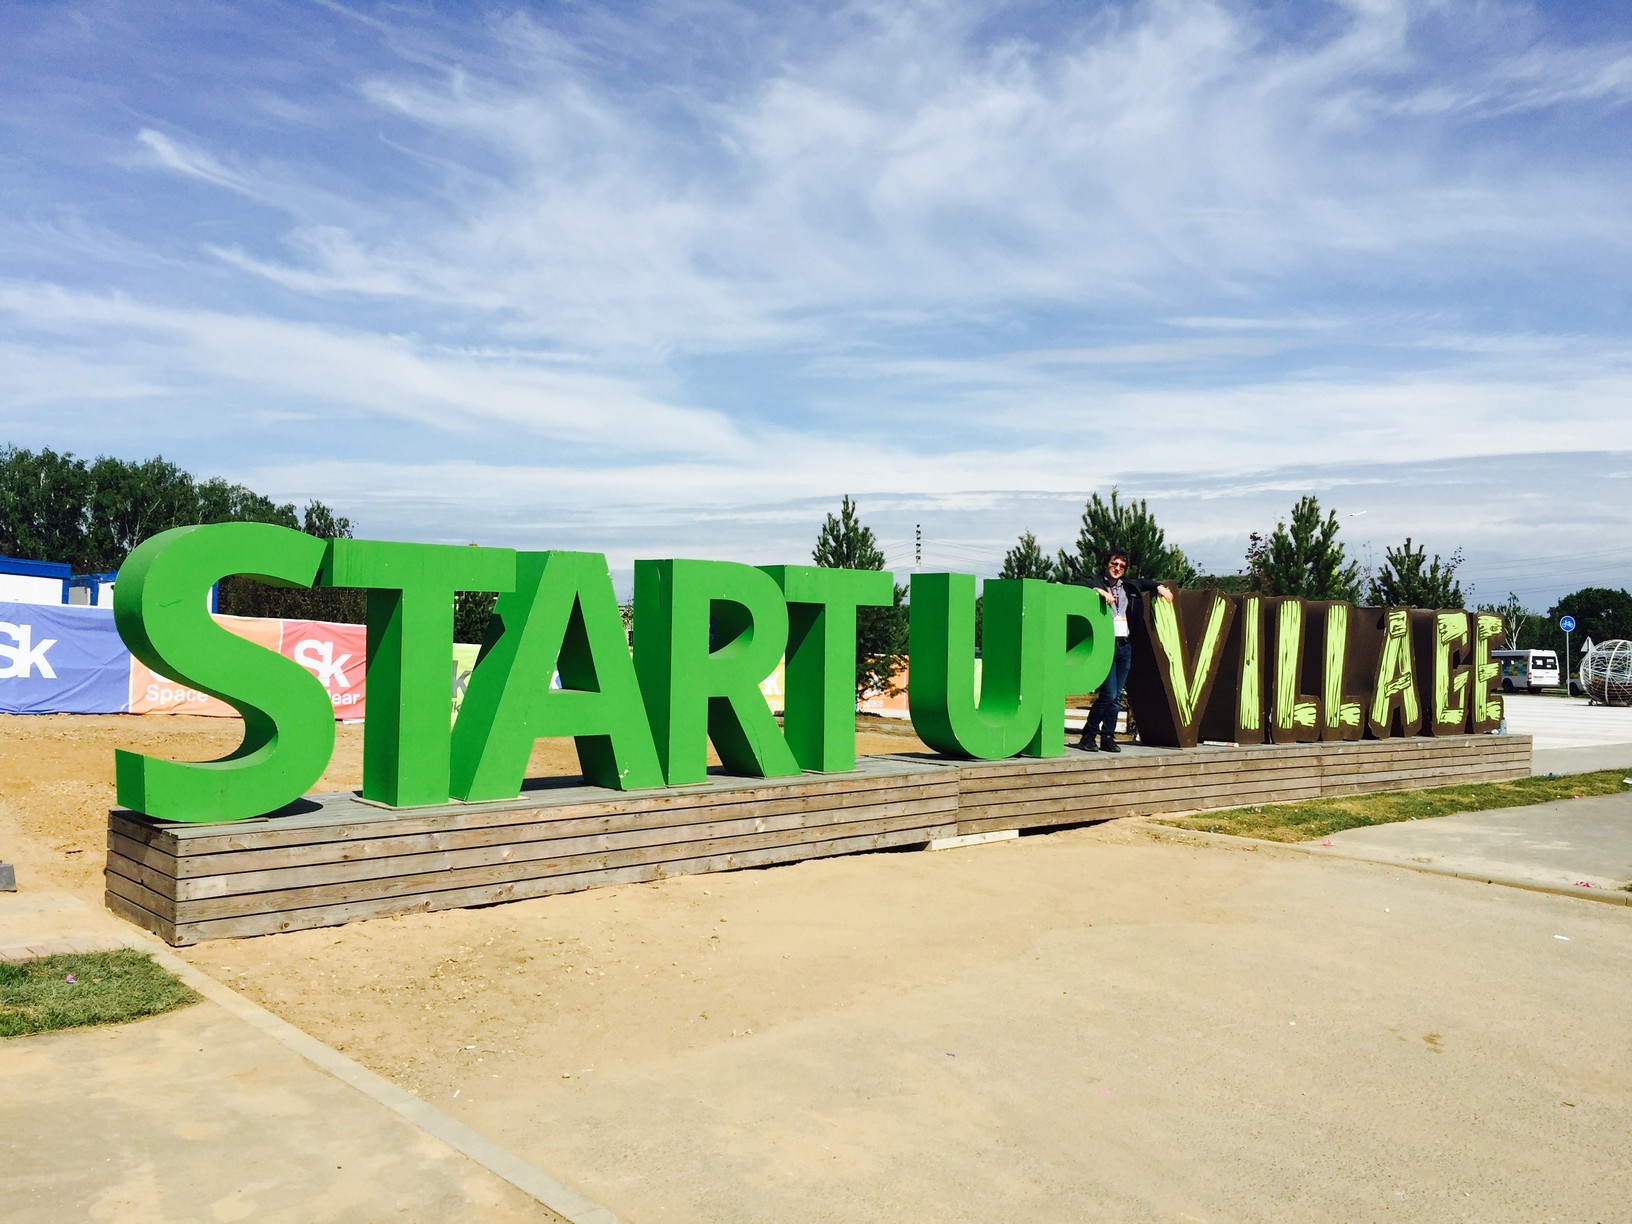 Startup Village!